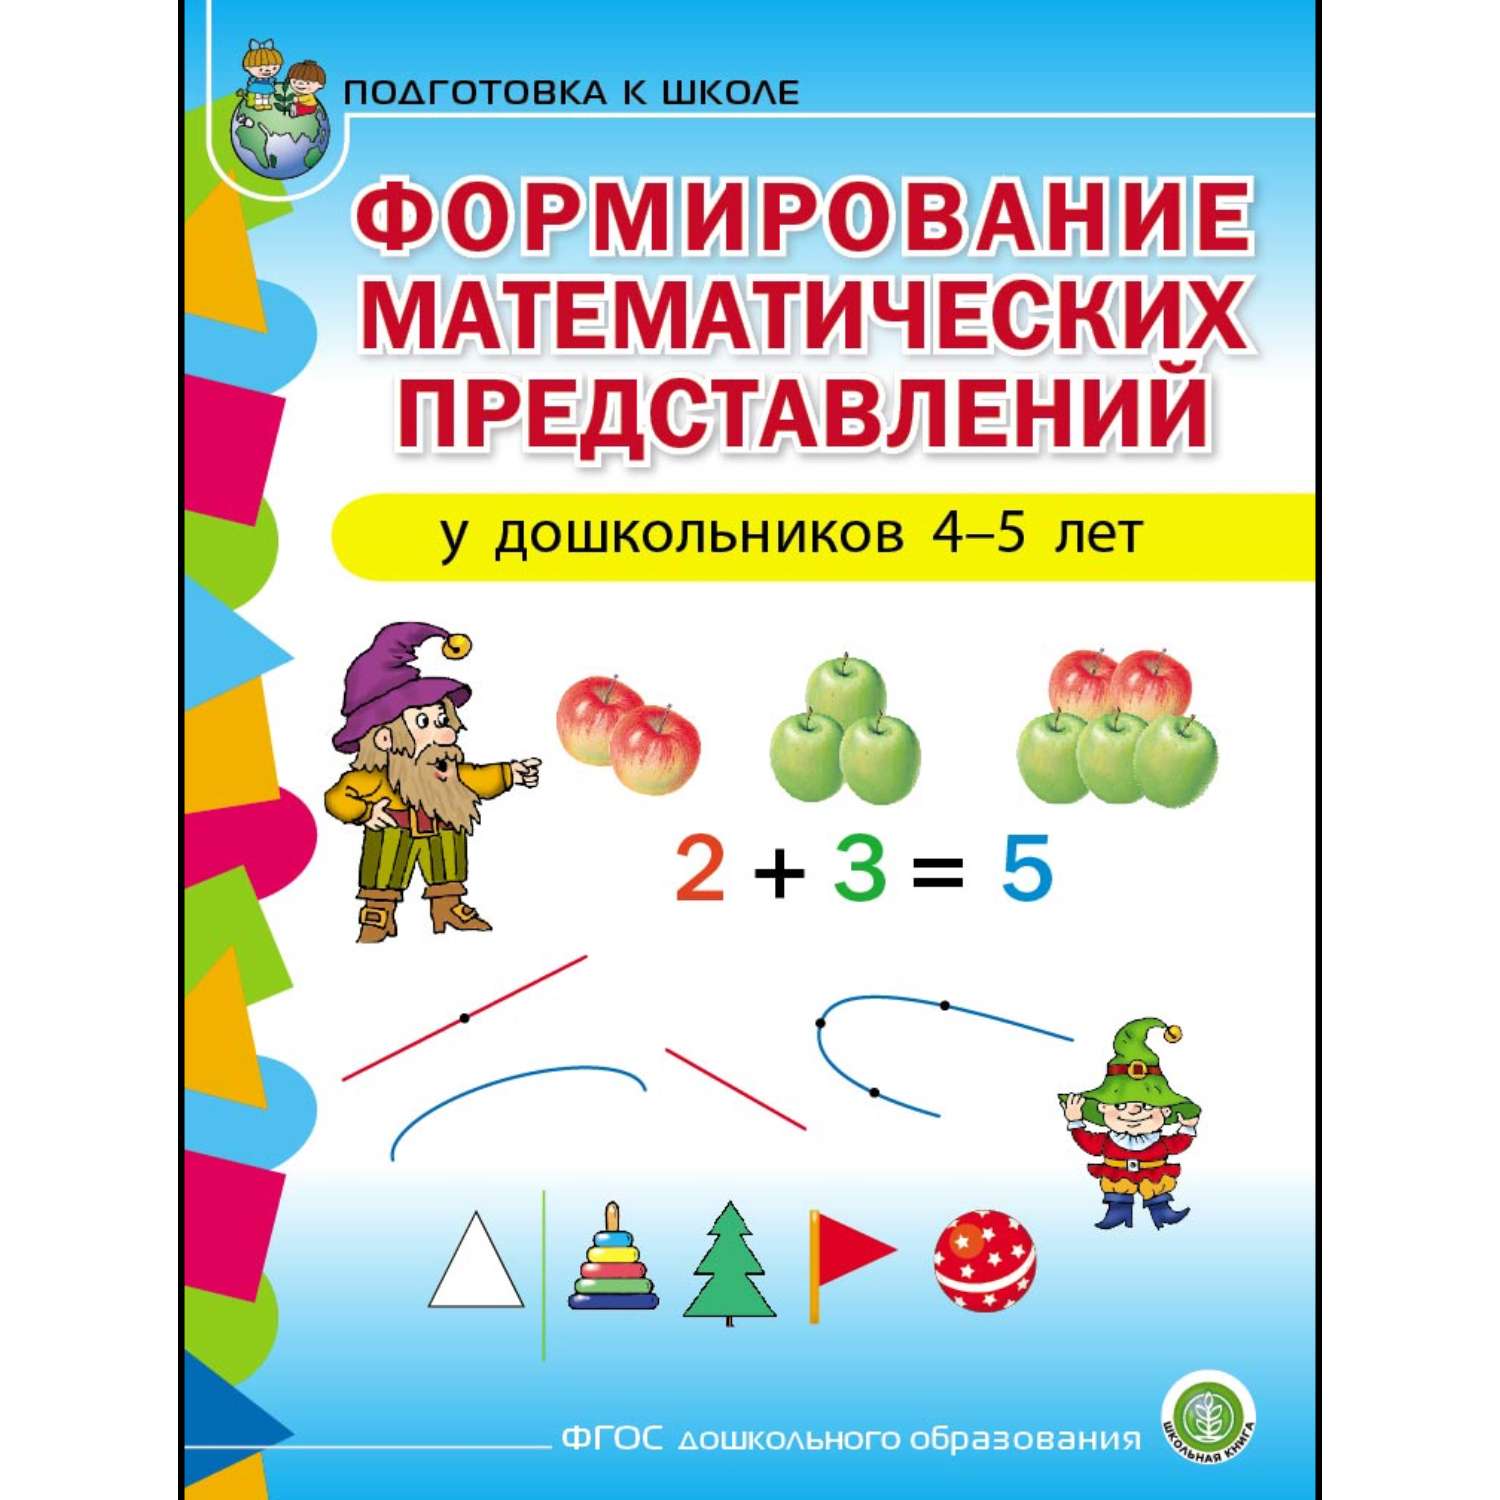 Математика по методике Зайцева — Магазин развивающих игр и игрушек Умный ребенок